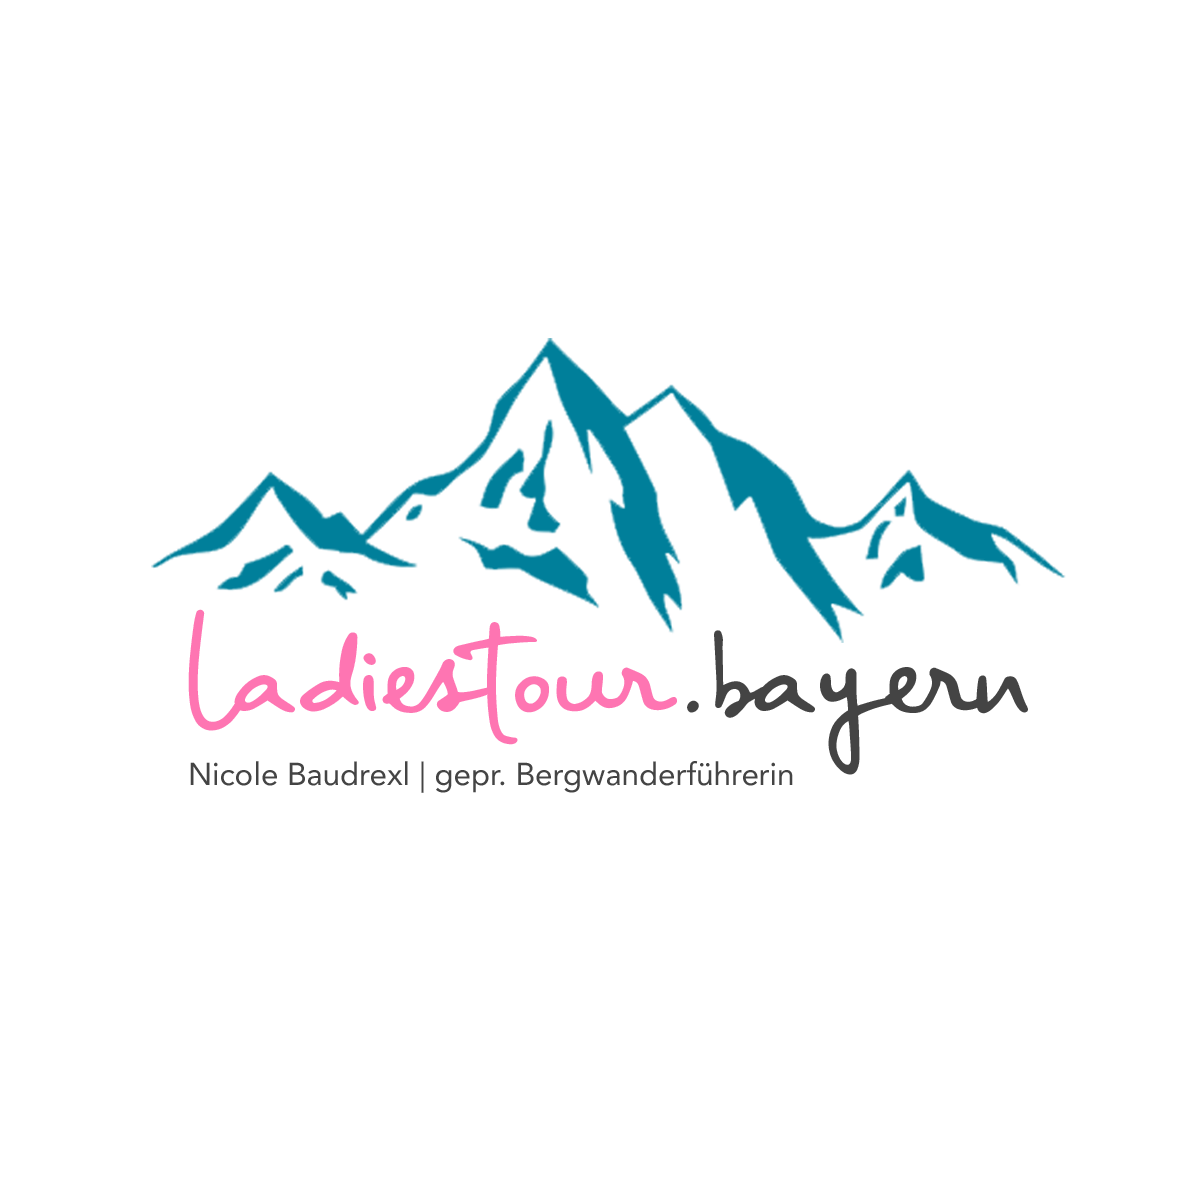 Das Logo von "Ladiestour" aus Prien am Chiemsee.